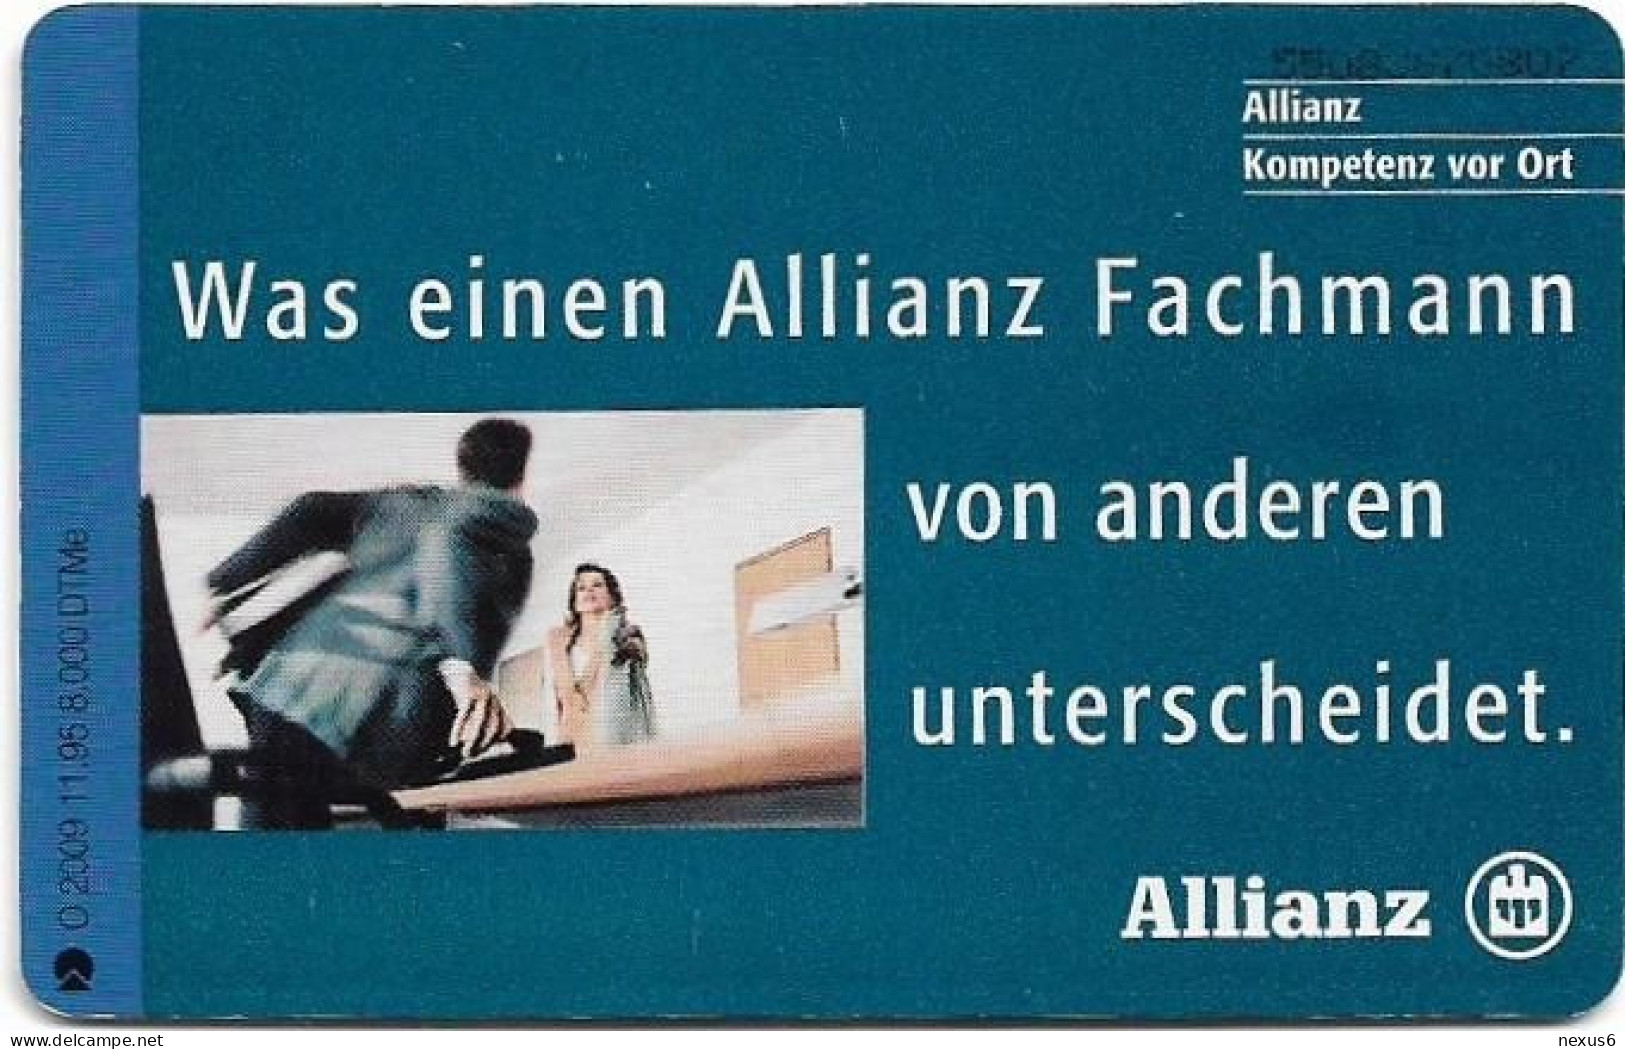 Germany - Allianz 10 – Fachmann Vor Ort - O 2009 - 11.1995, 6DM, 8.000ex, Used - O-Series: Kundenserie Vom Sammlerservice Ausgeschlossen